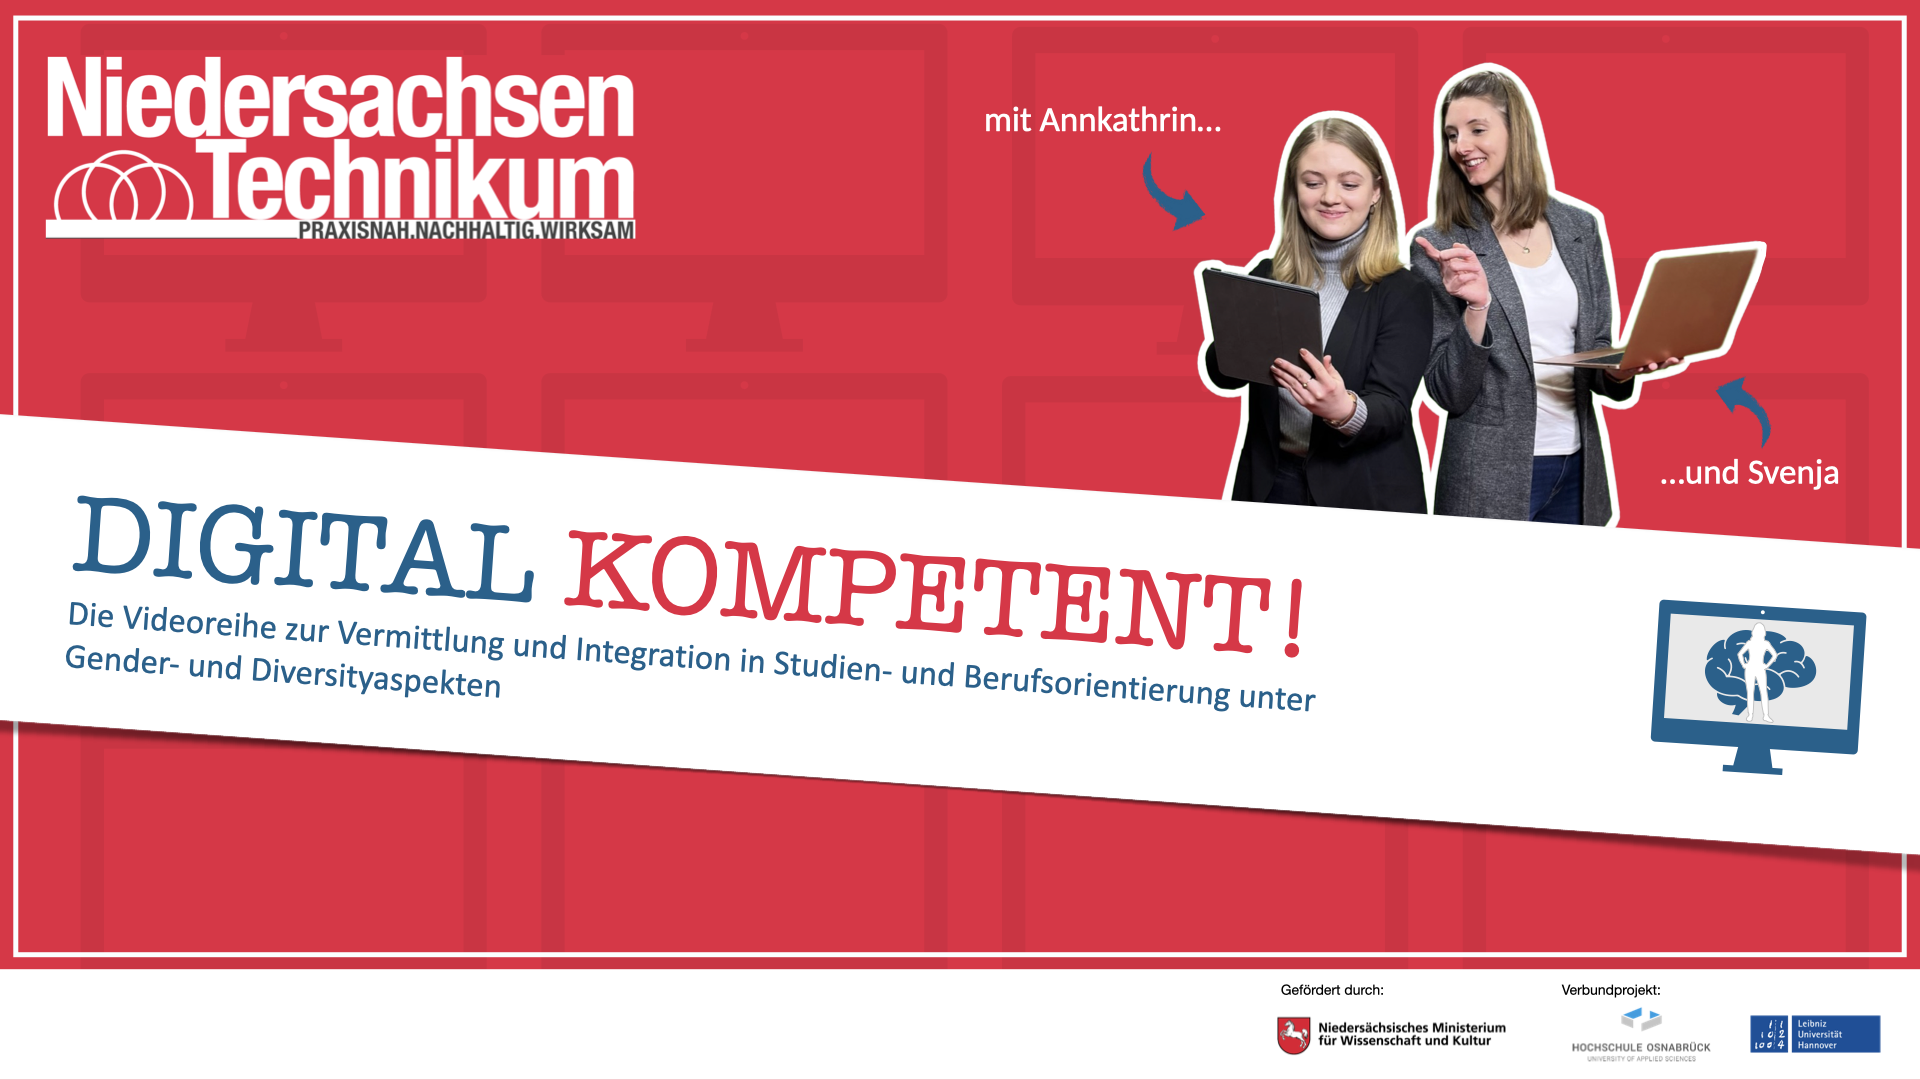 Ein Plakat zur Bewerbung der Video-Reihe "Digital kompetent" des Niedersachsen-Technikums.